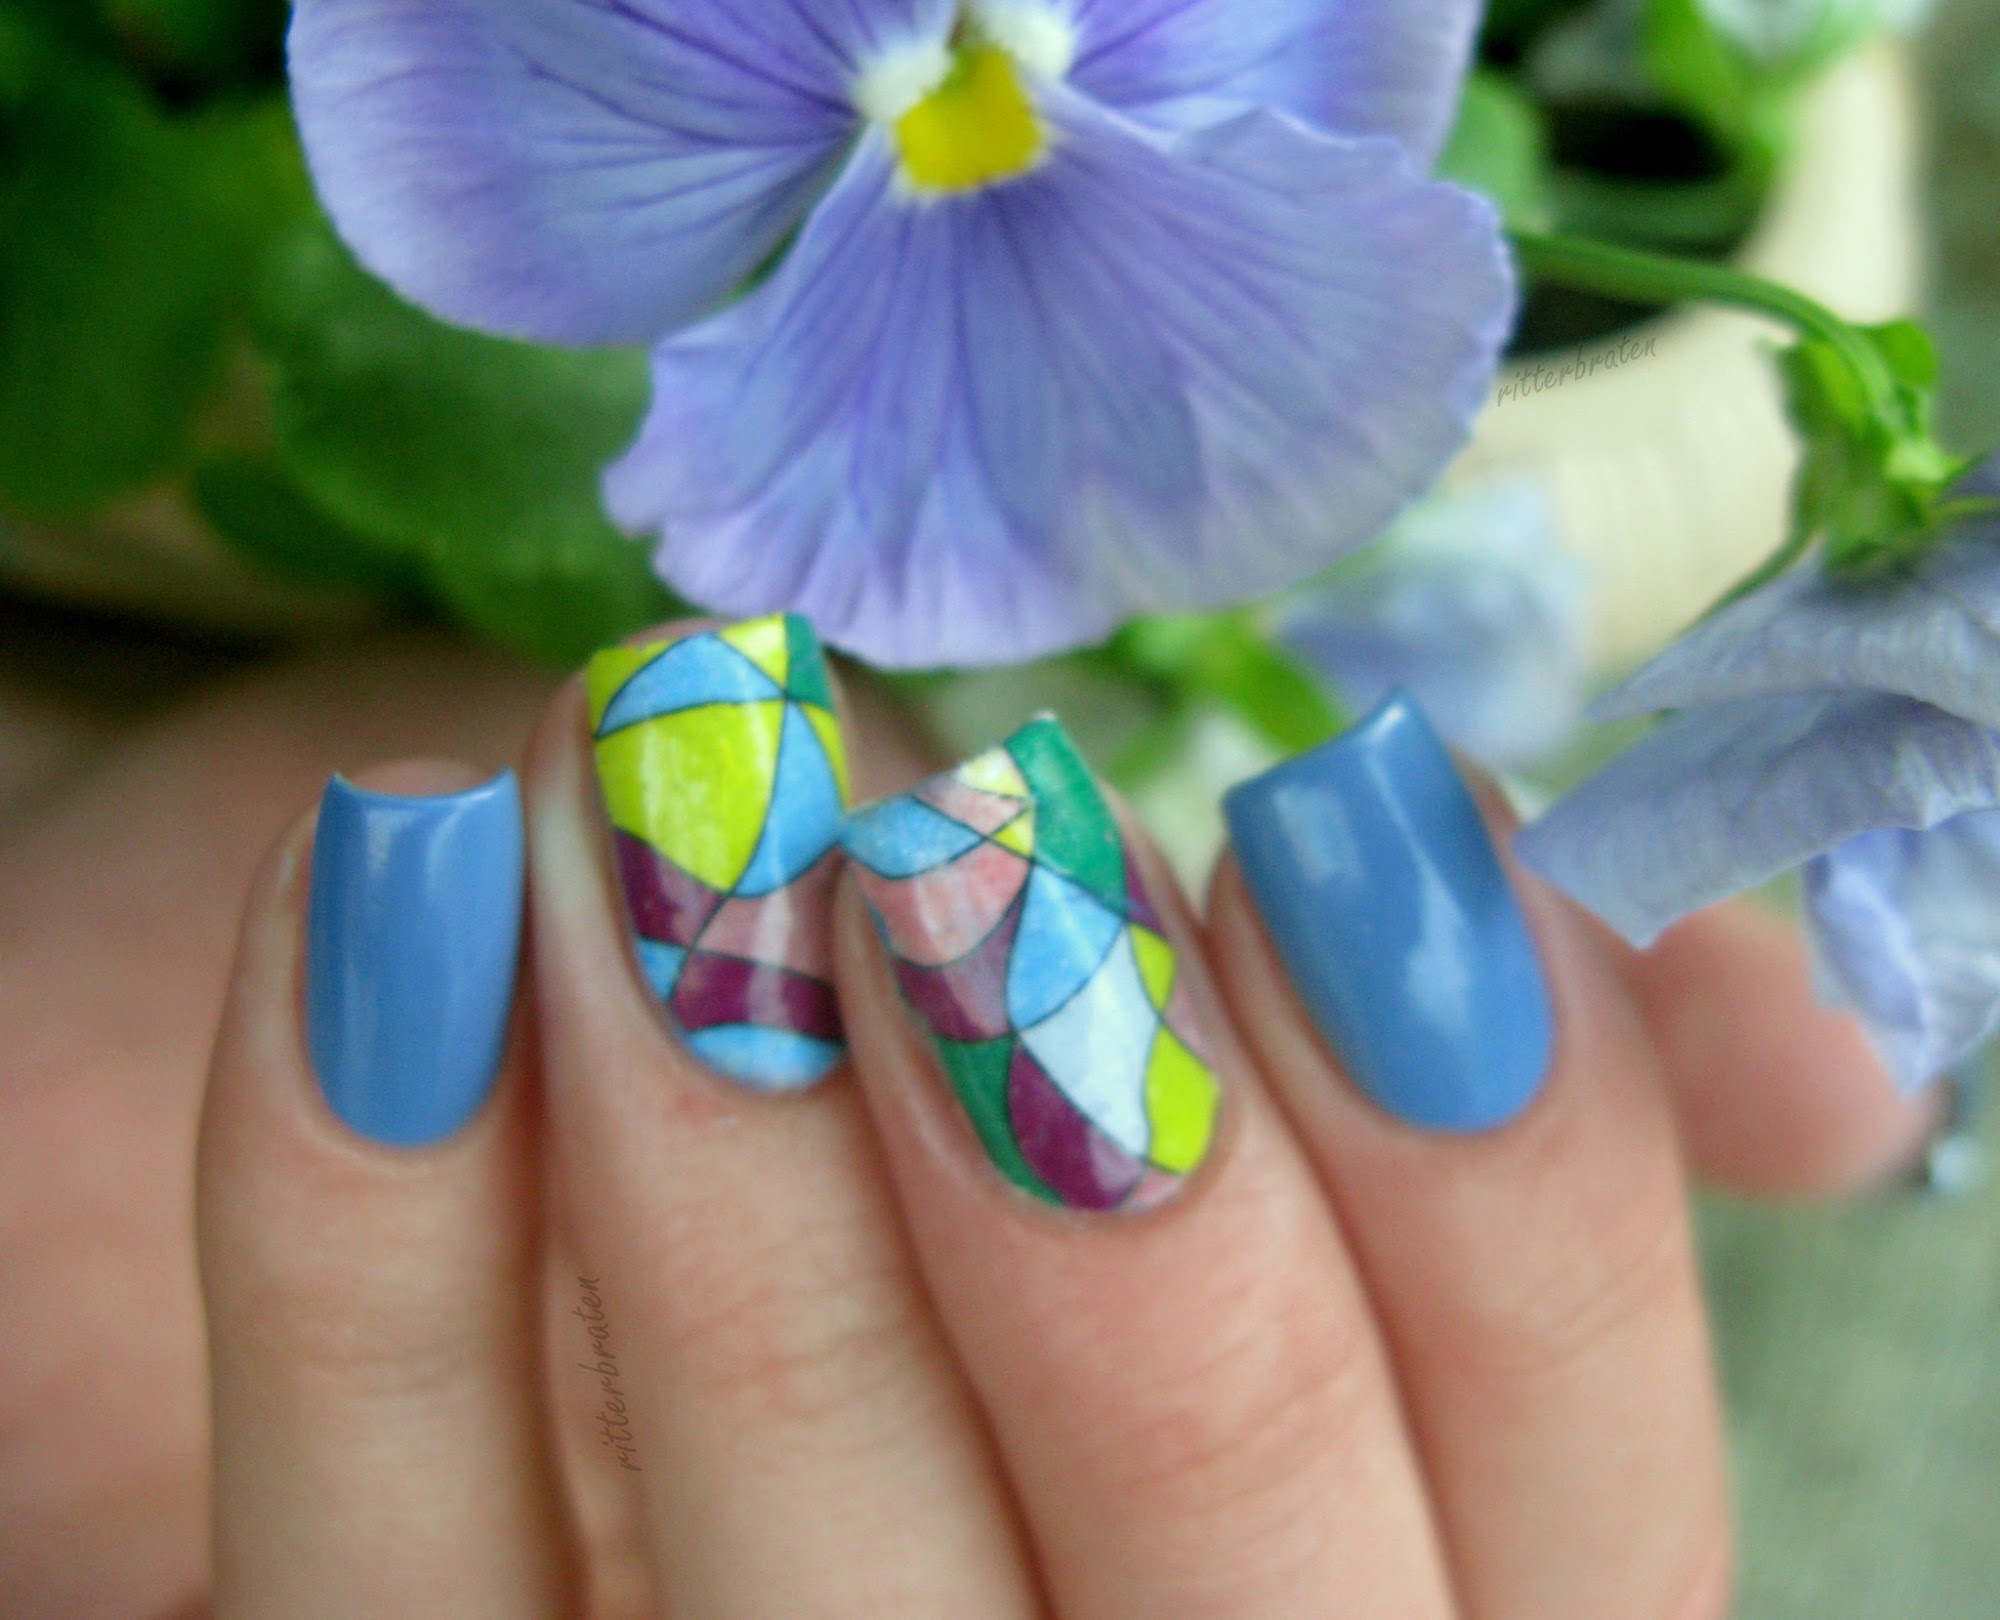 mosaic nails